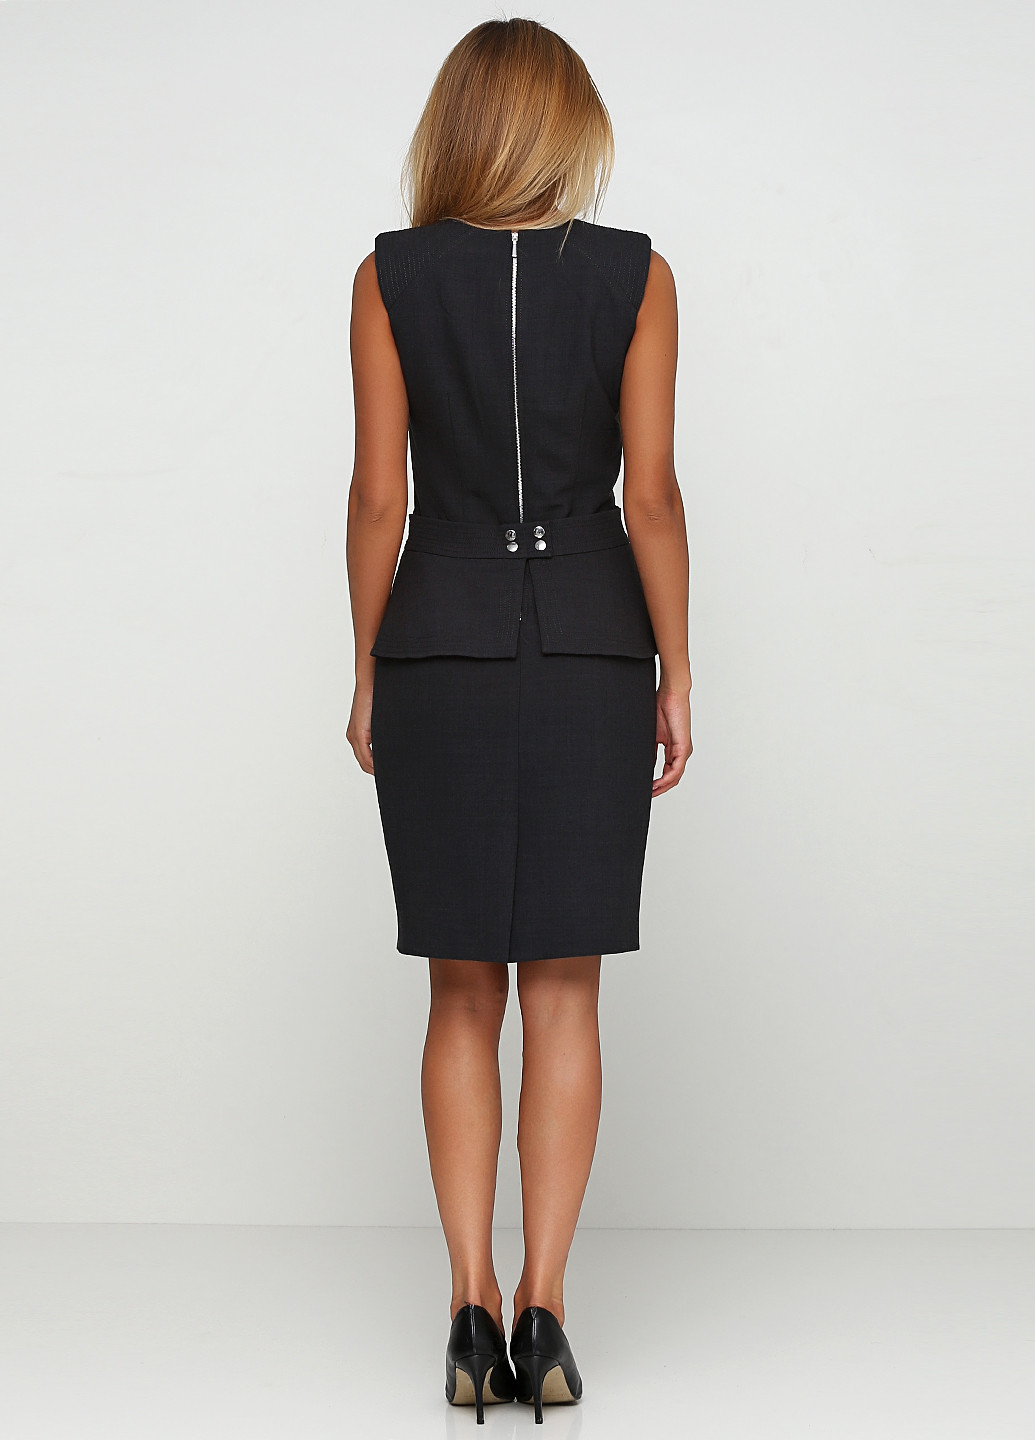 Темно-серое деловое платье футляр Luisa Spagnoli однотонное